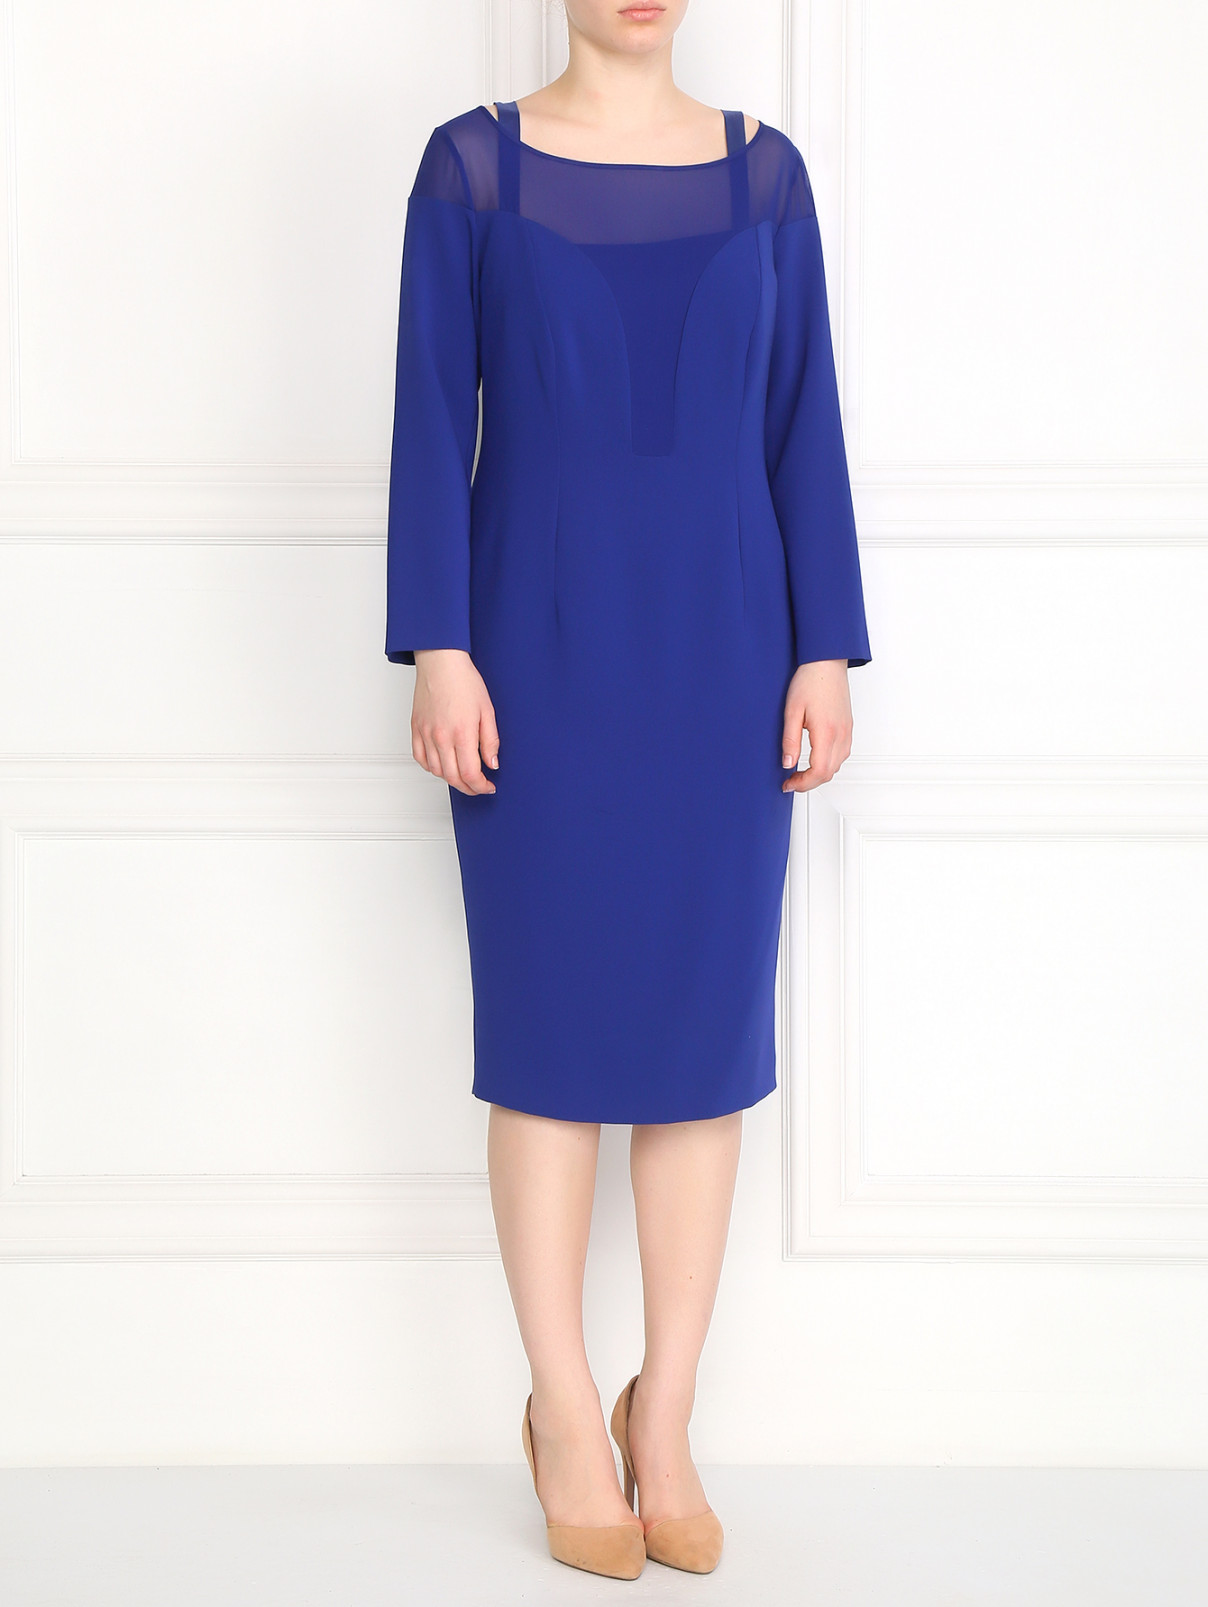 Платье-футляр с прозрачной вставкой Marina Rinaldi  –  Модель Общий вид  – Цвет:  Синий